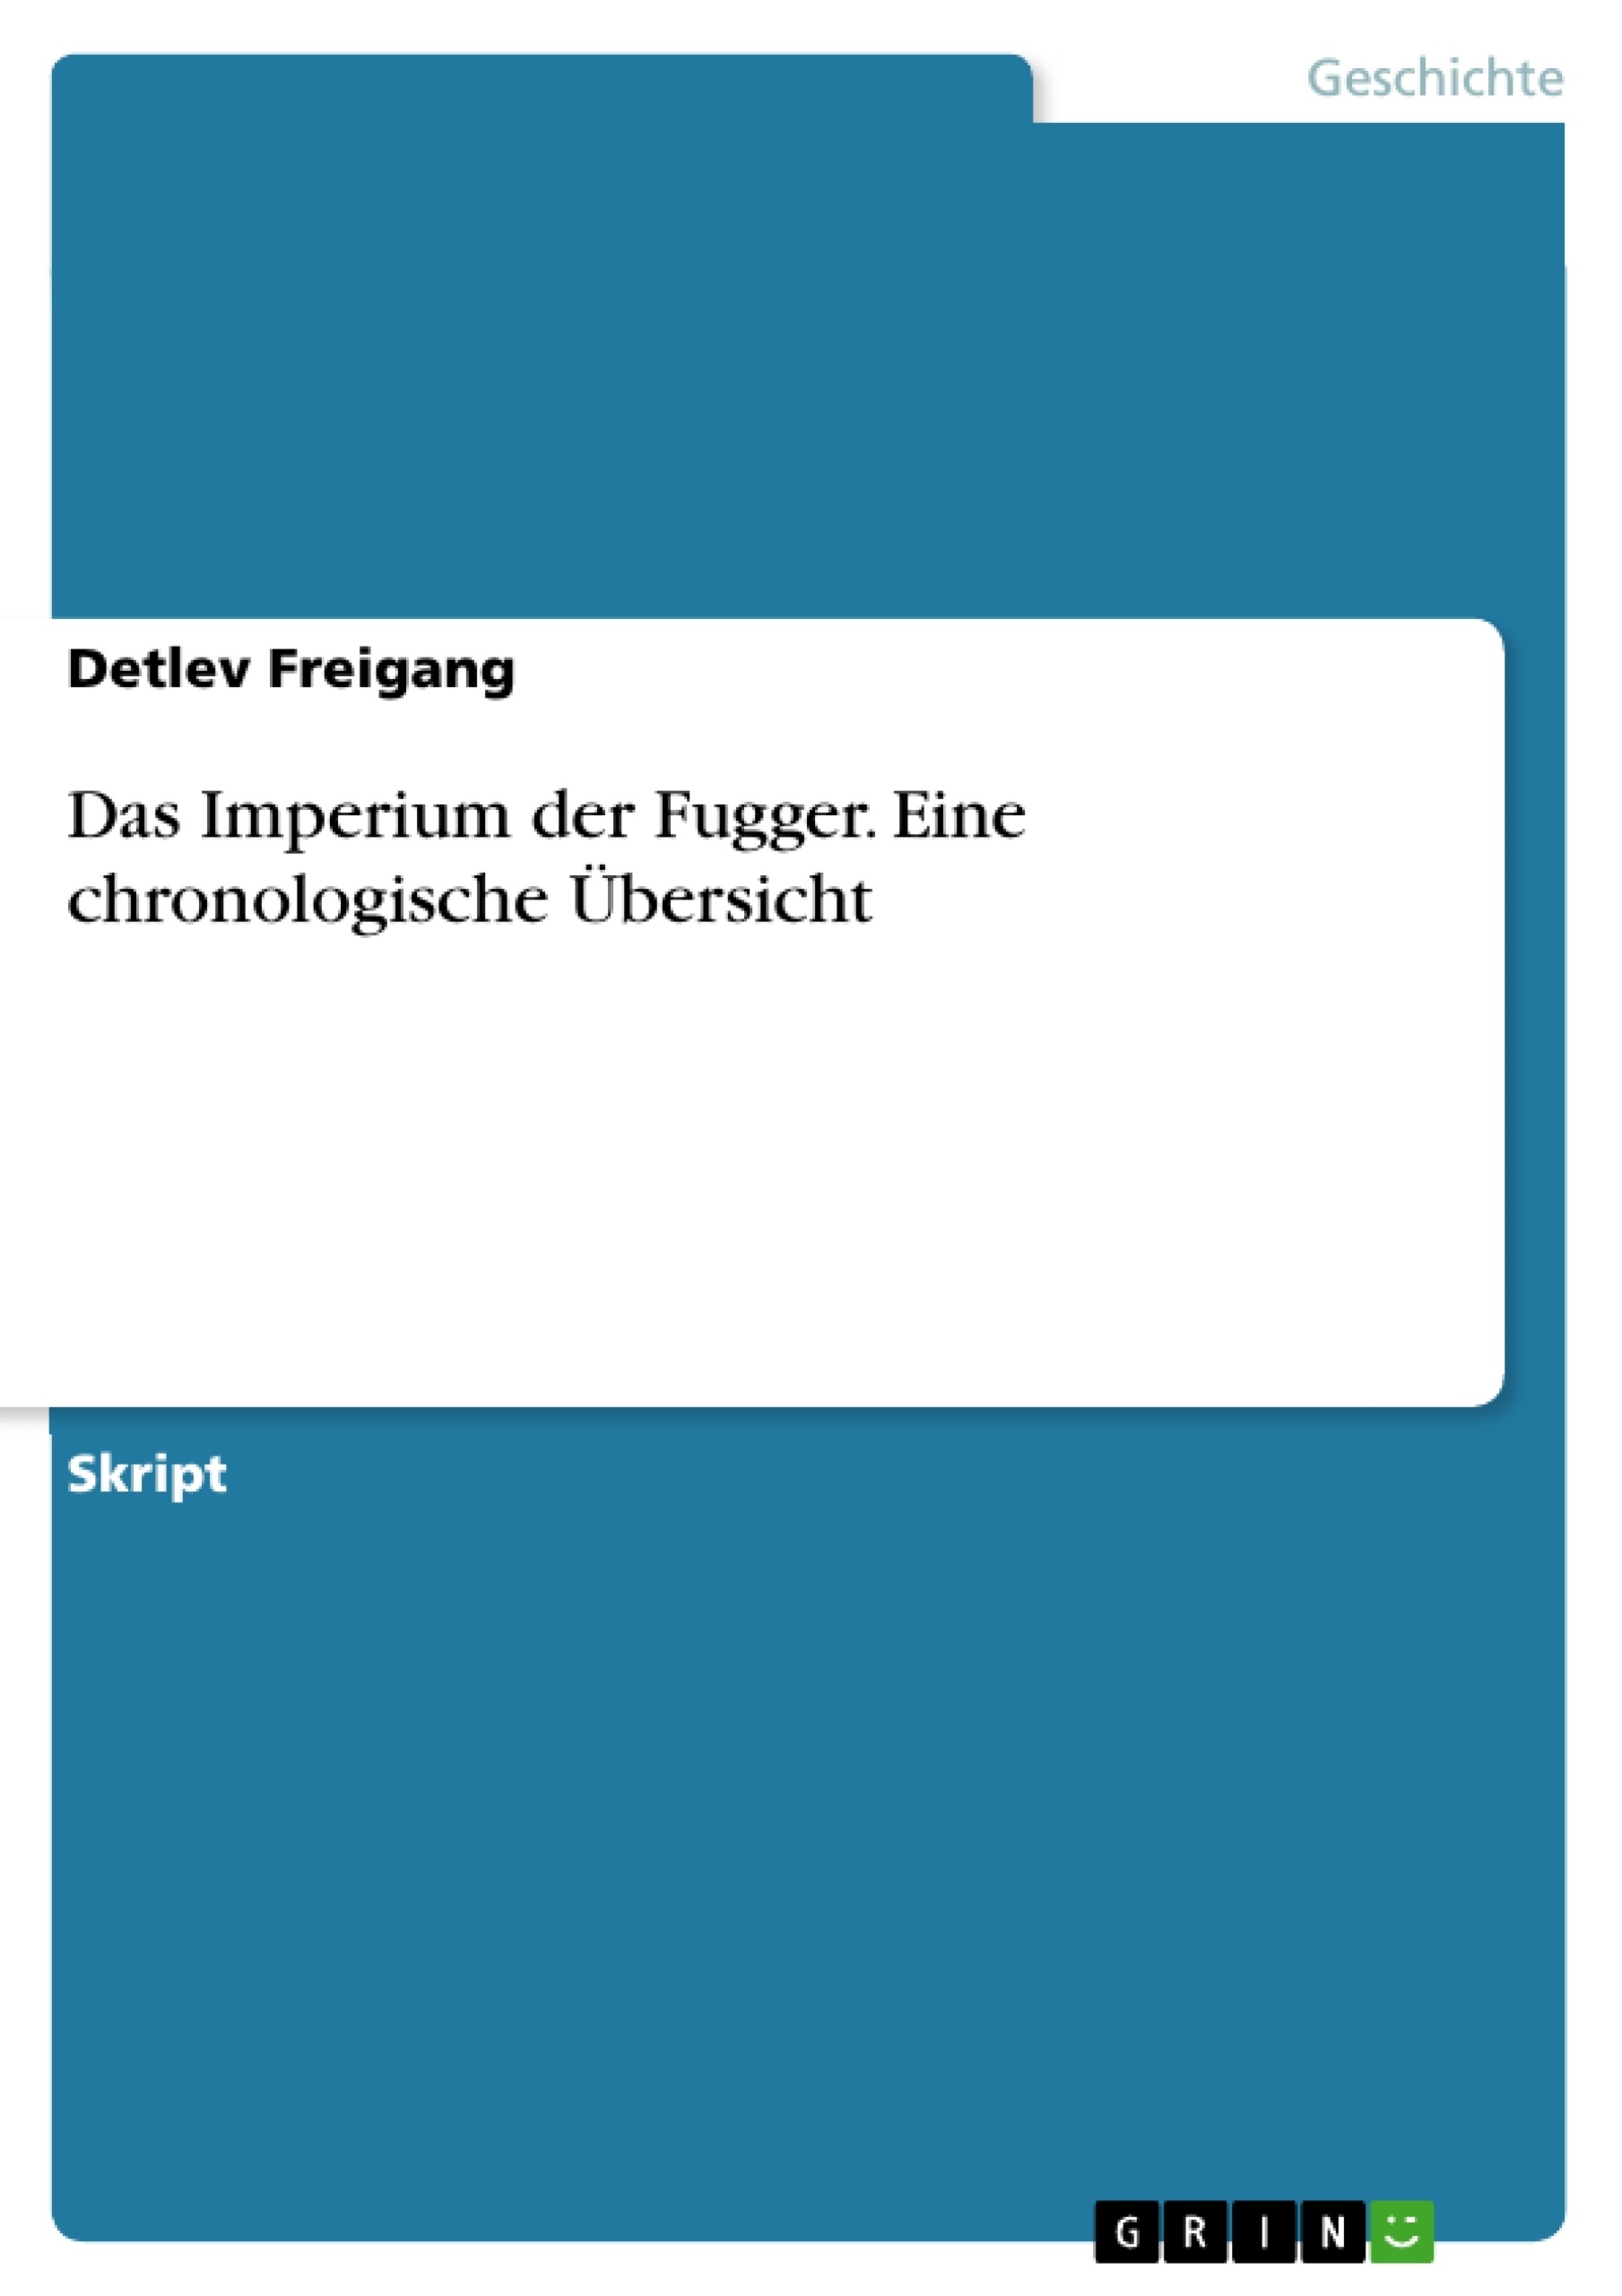 Title: Das Imperium der Fugger. Eine chronologische Übersicht